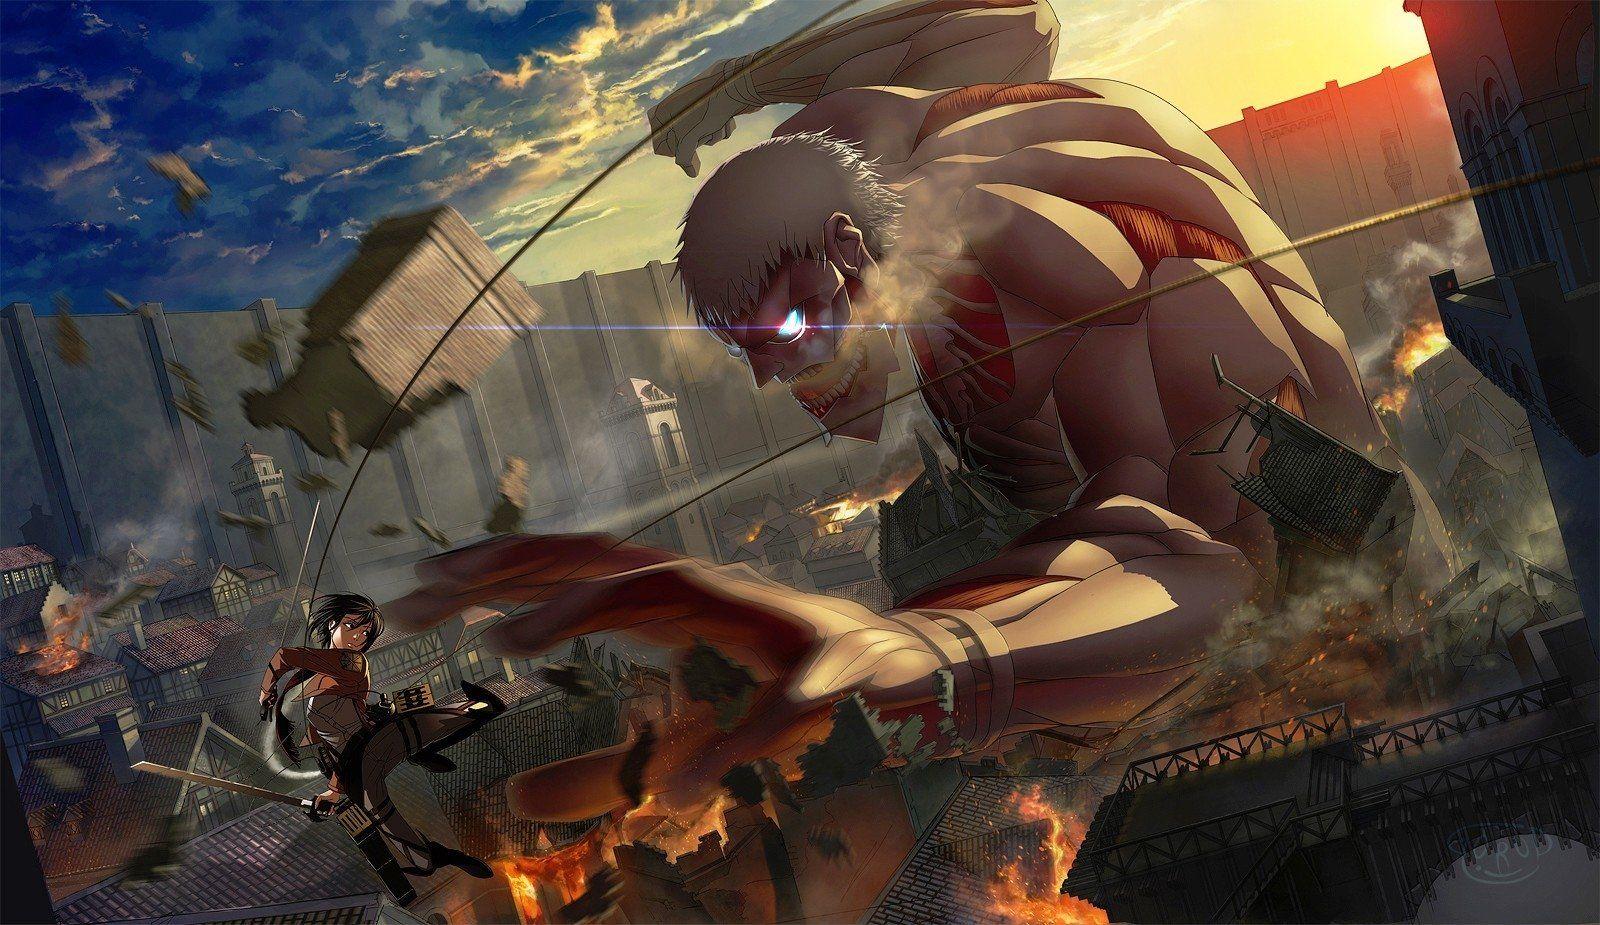 Attack On Titan Armored Titan Wallpaper Free Attack On